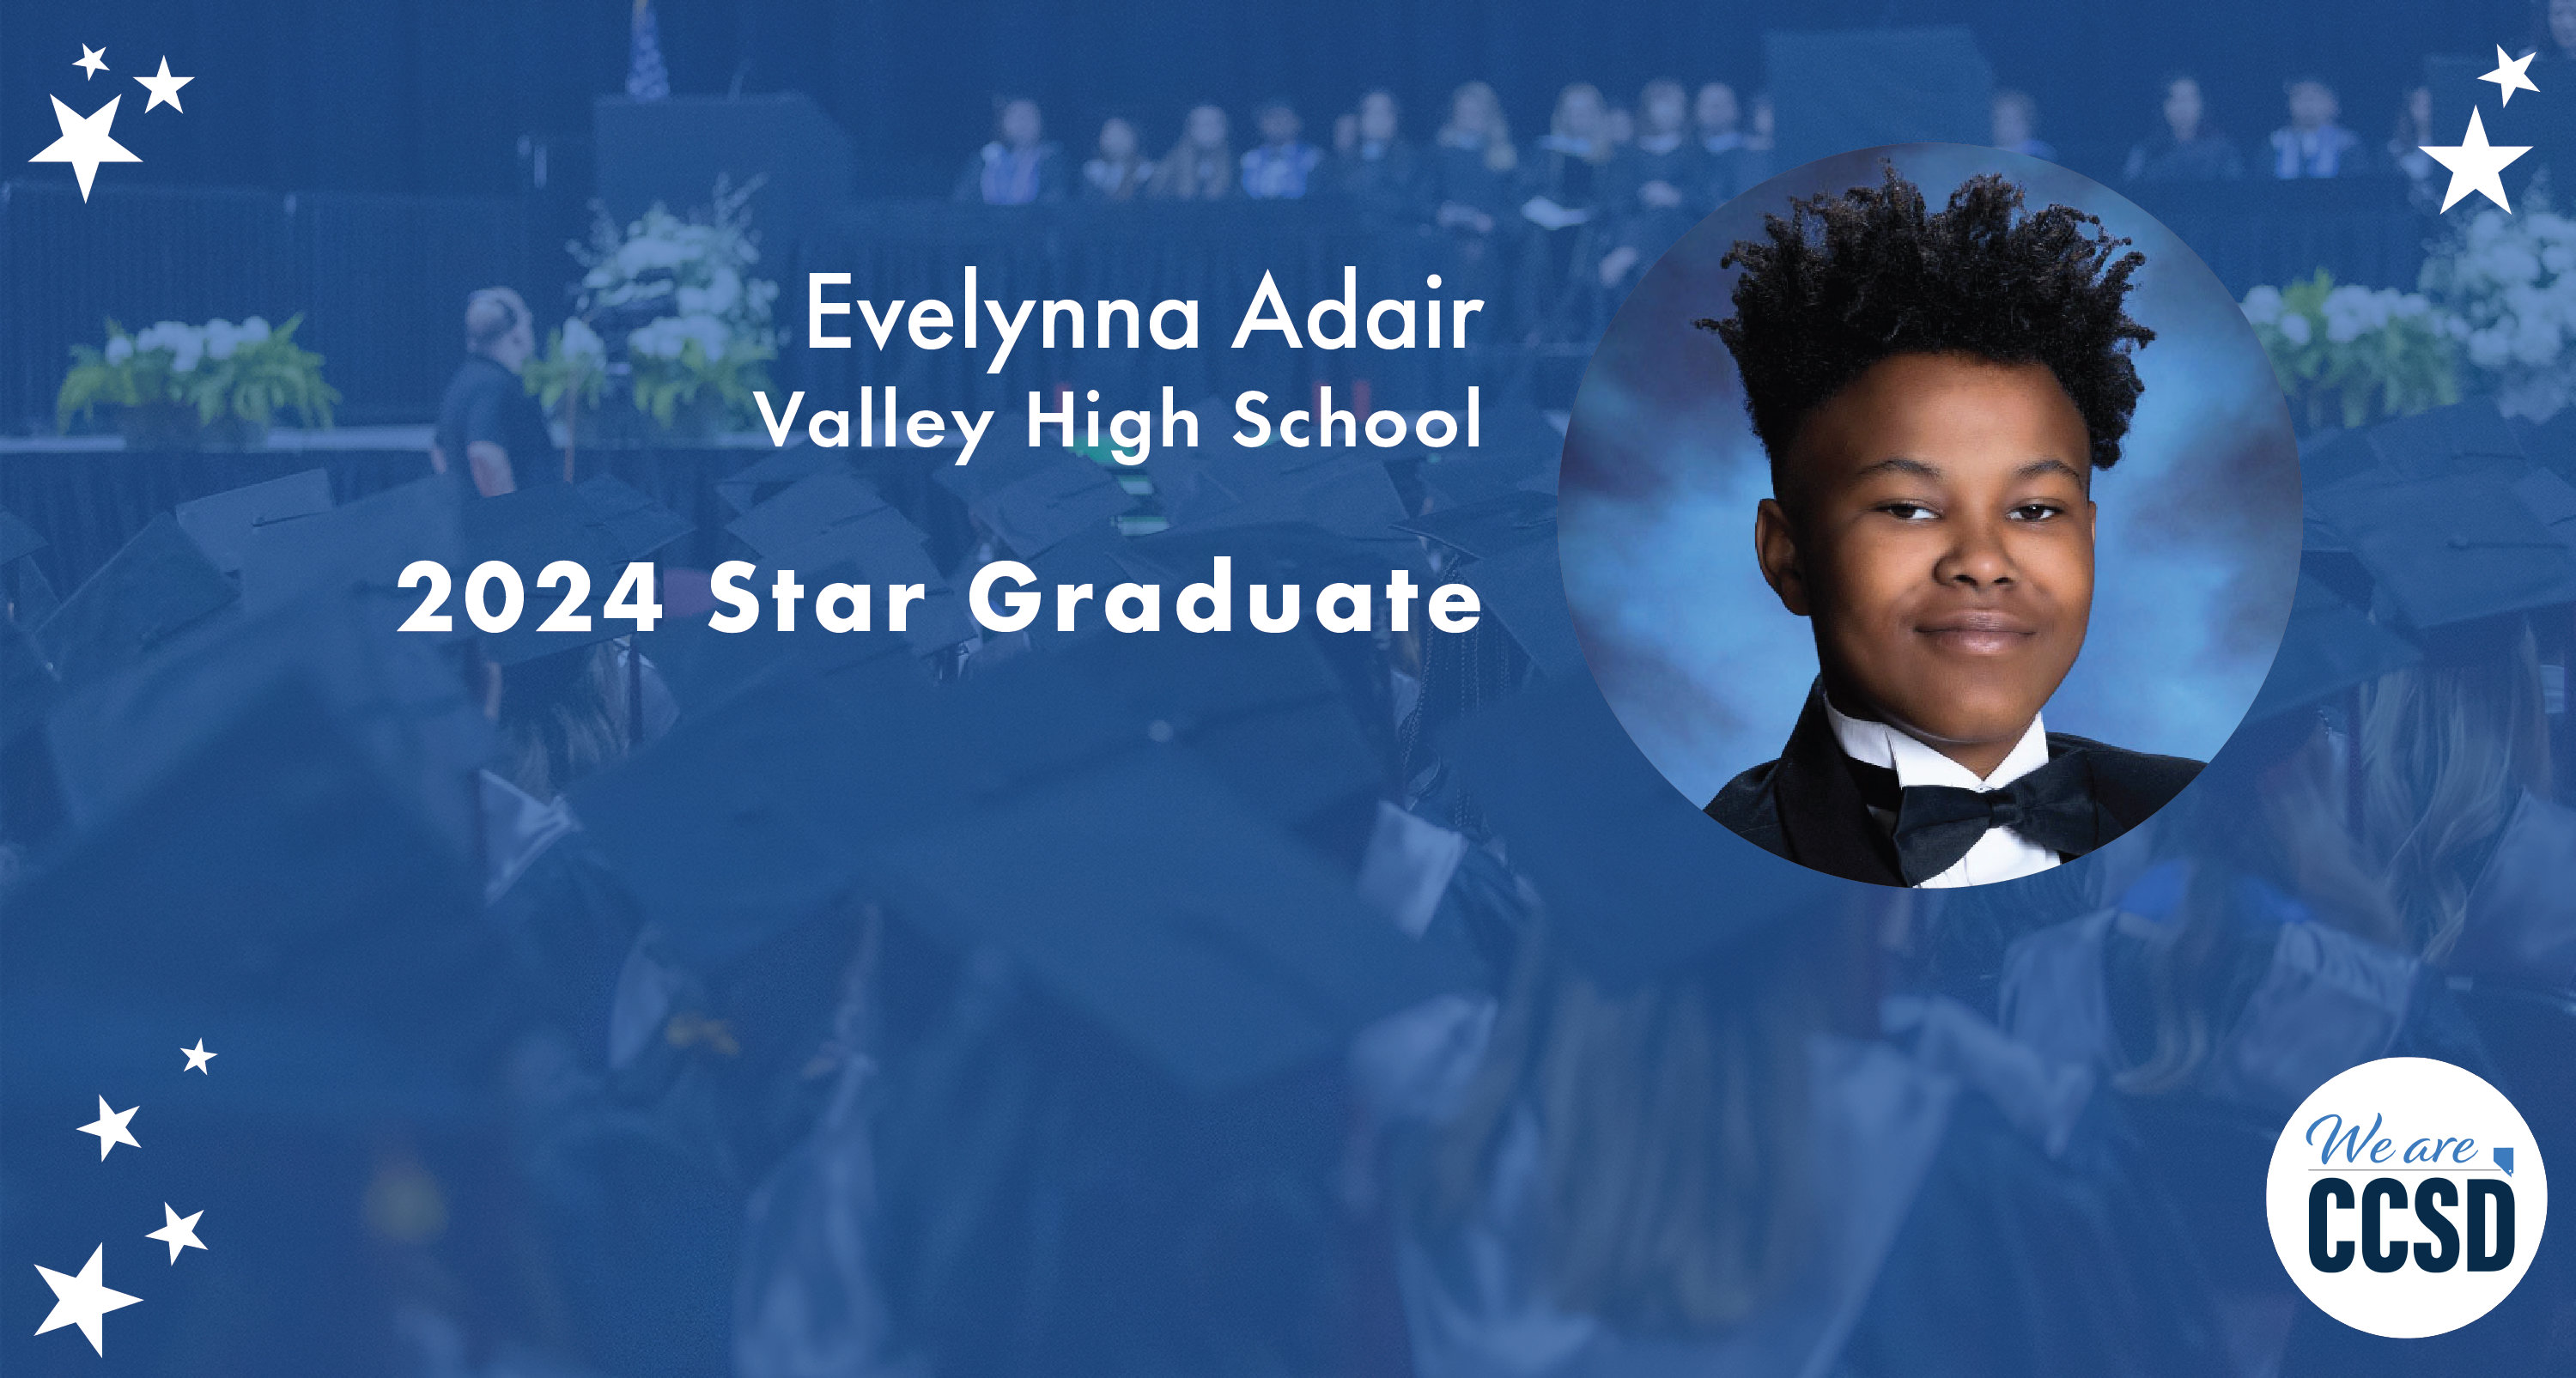 Star Grad – Valley High School